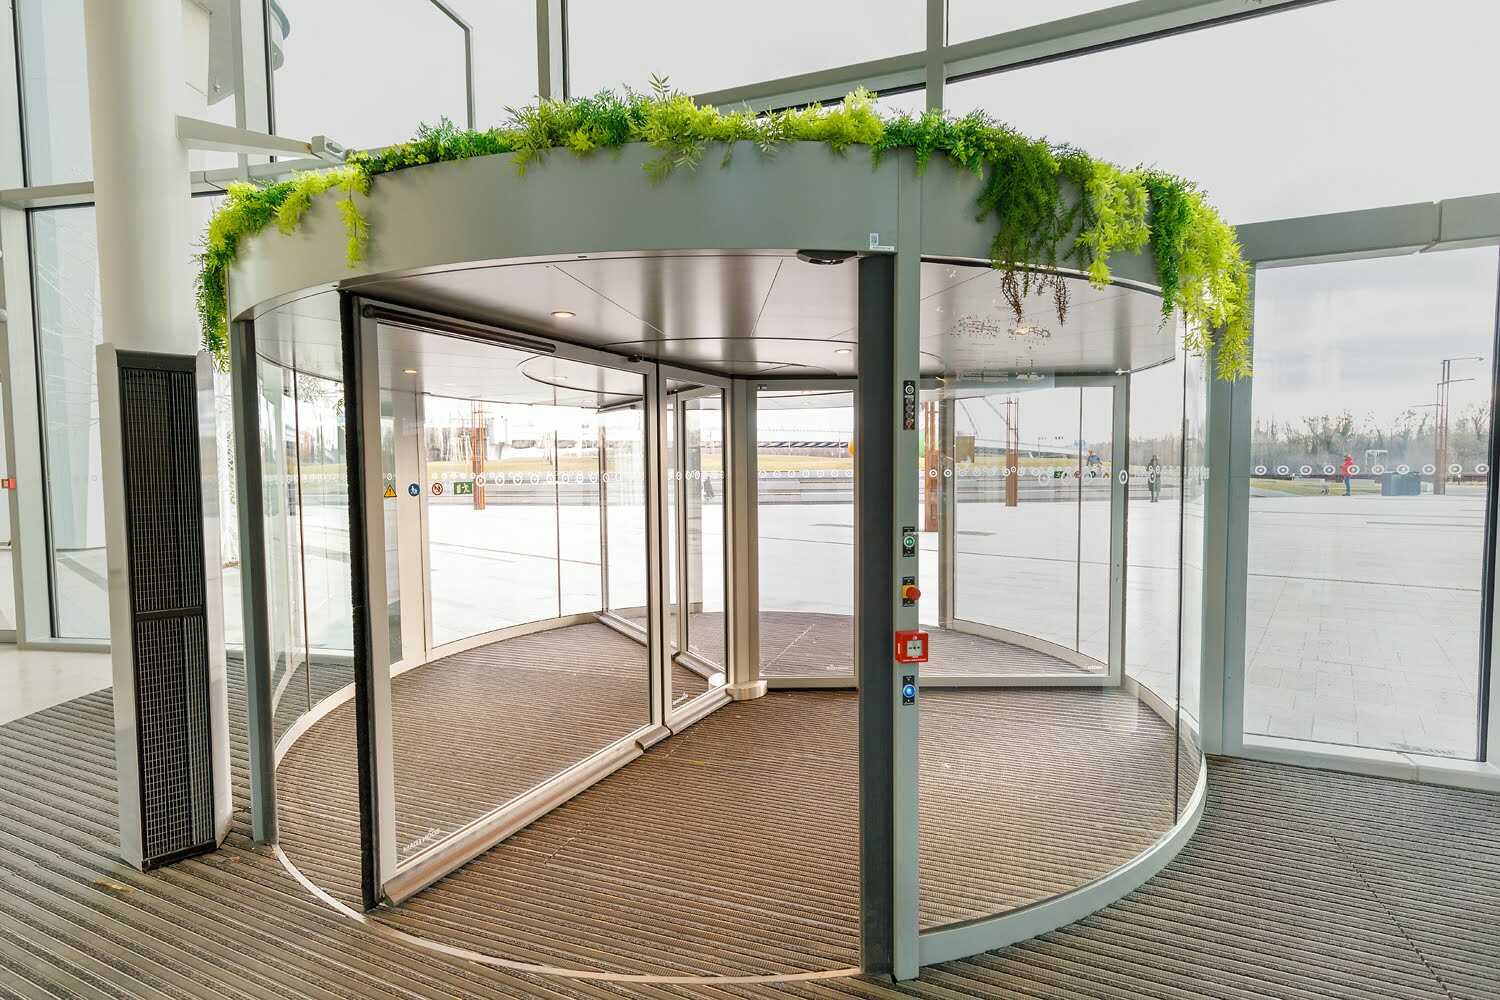 Vstup do nákupního centra Eurovea zajišťují karuselové dveře